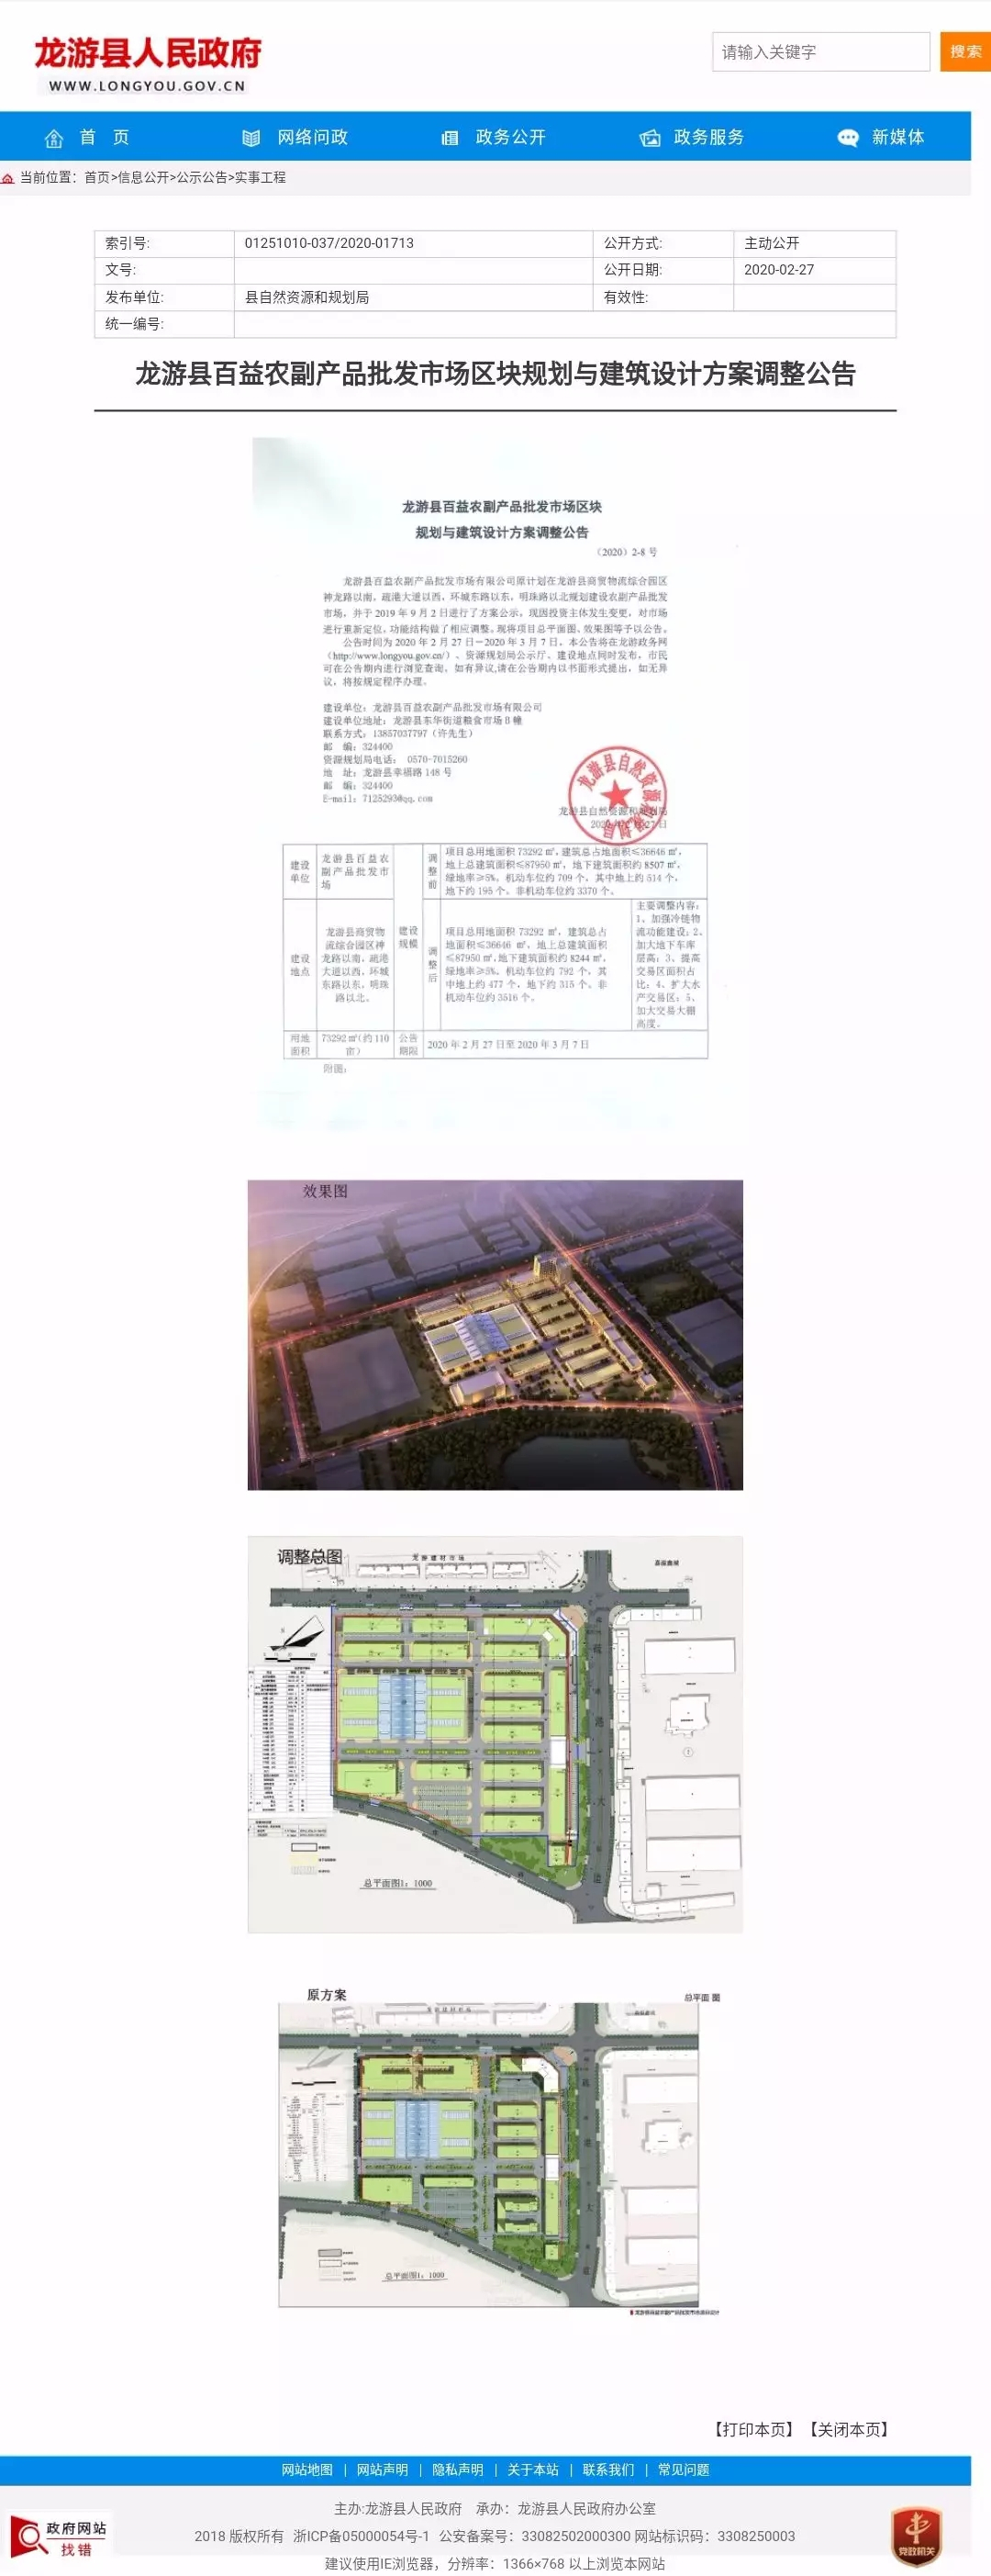 抢占战略新高地，打造四省九地水产集散中心——东日龙游-农副产品中心市场